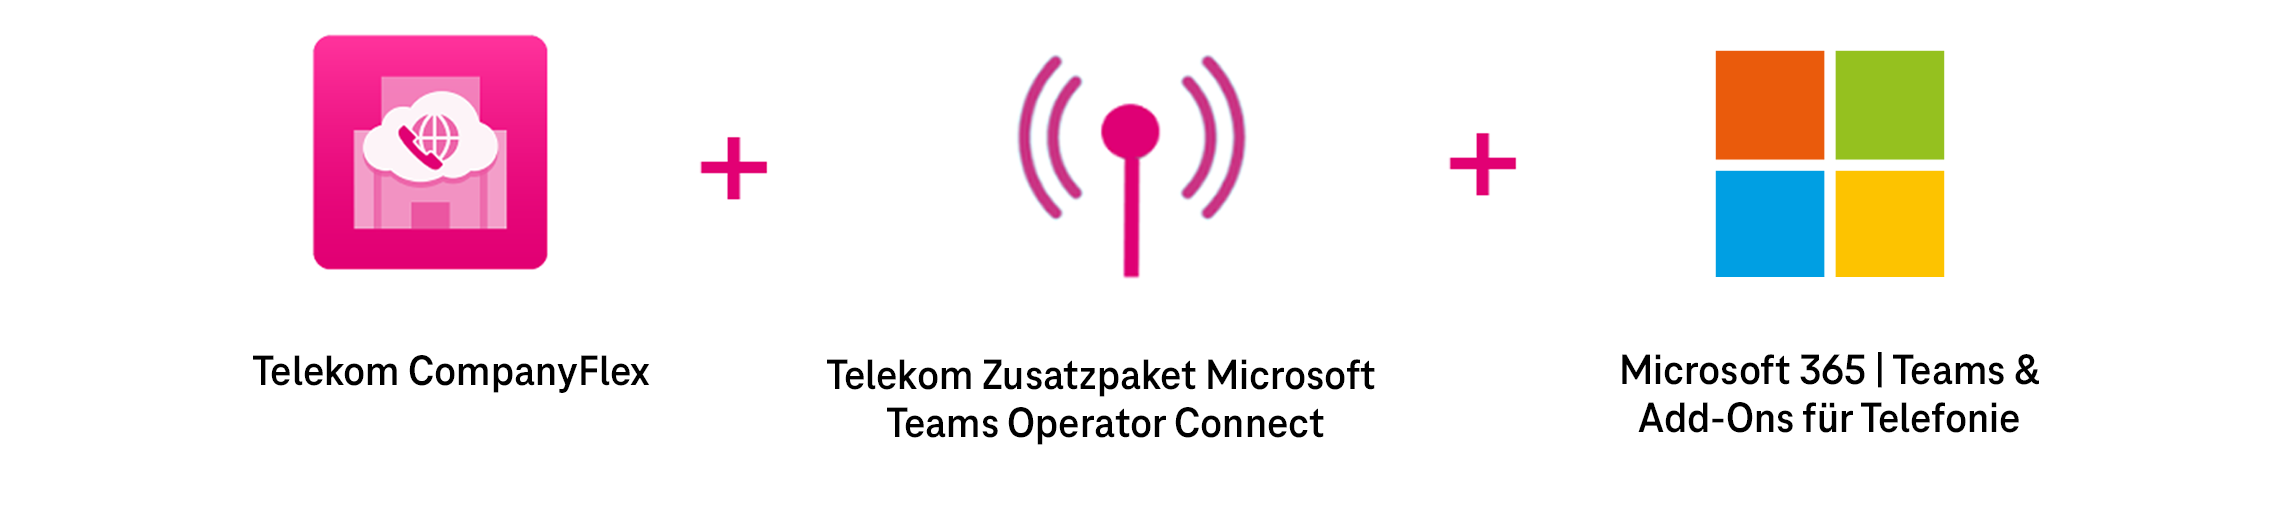 Infografik für die Bestandteile von MS Teams X: Companyflex + Operator Connect + MS Teams und Phone